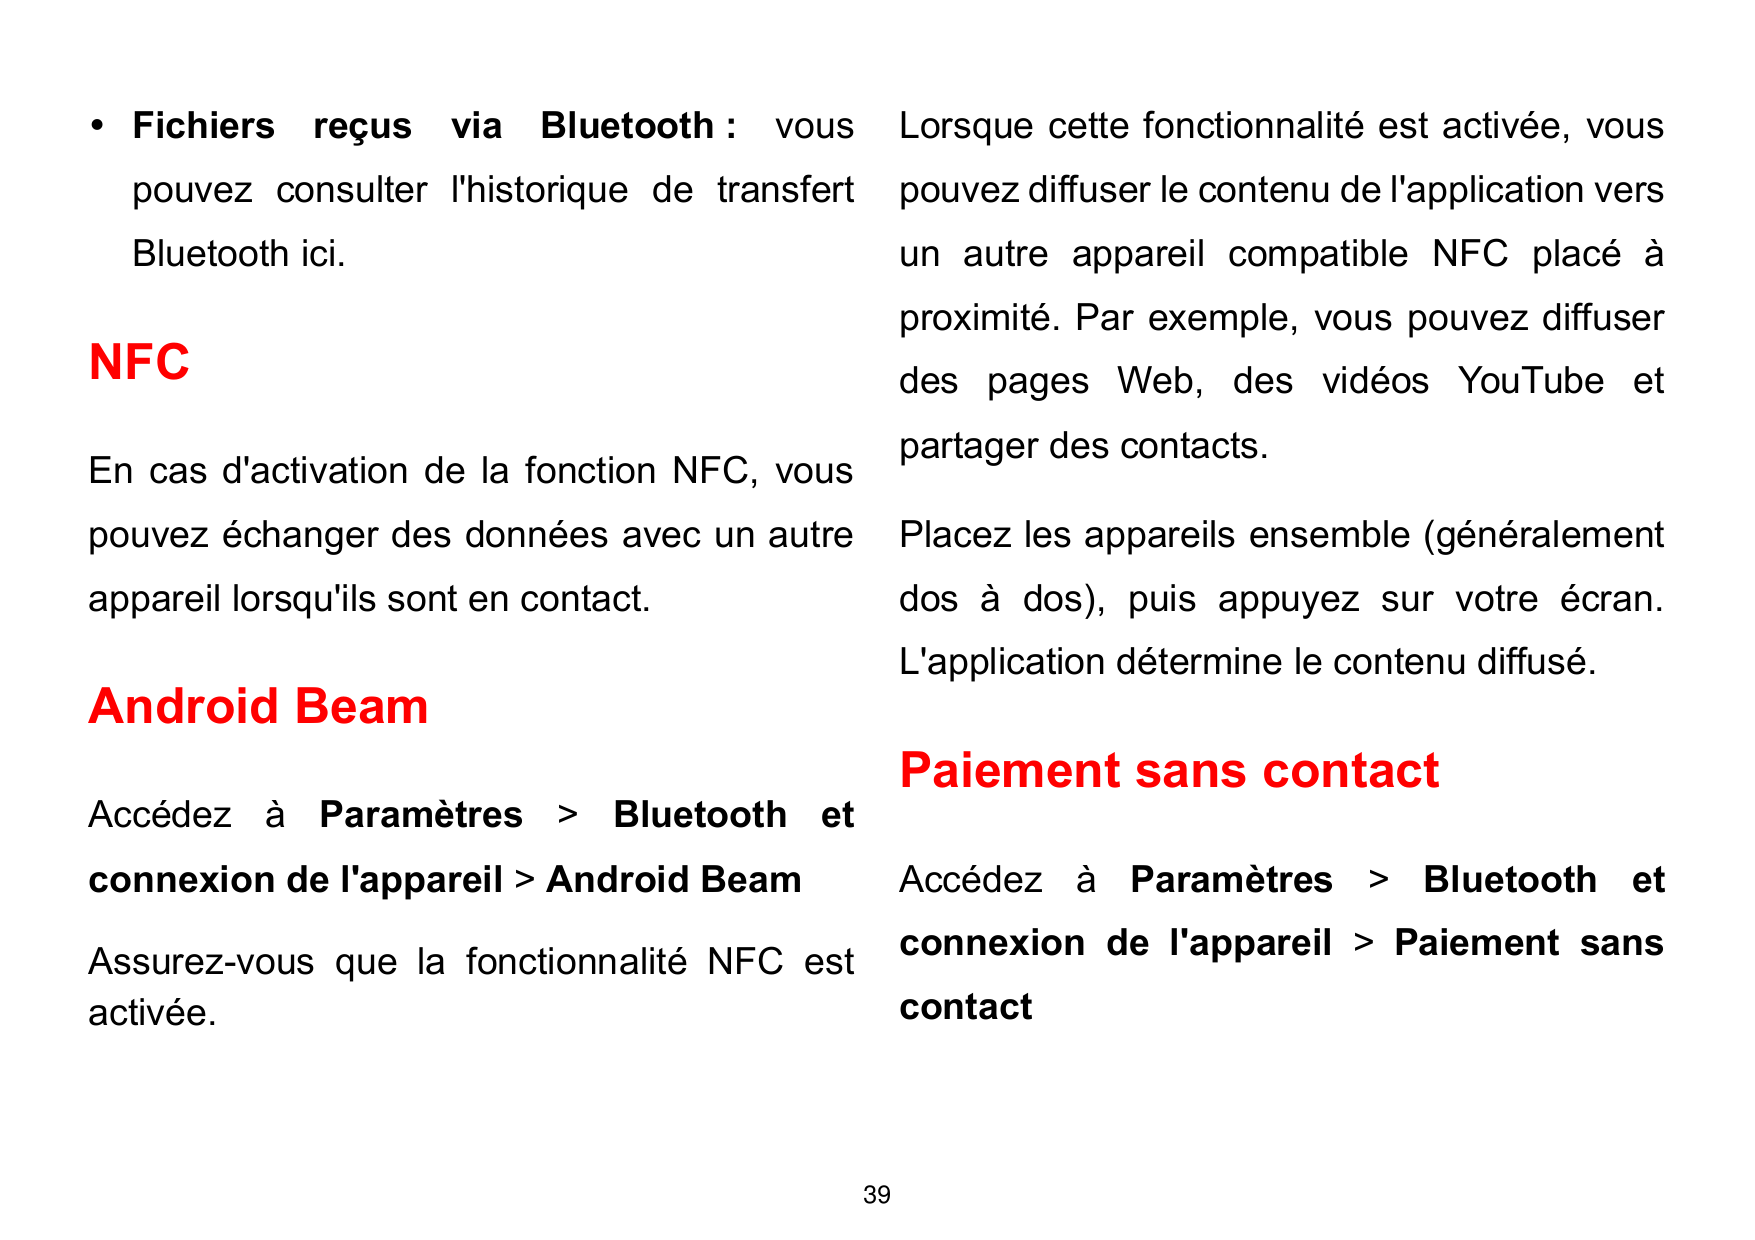  Fichiers reçus via Bluetooth :vousLorsque cette fonctionnalité est activée, vouspouvez consulter l'historique de transfertpouv